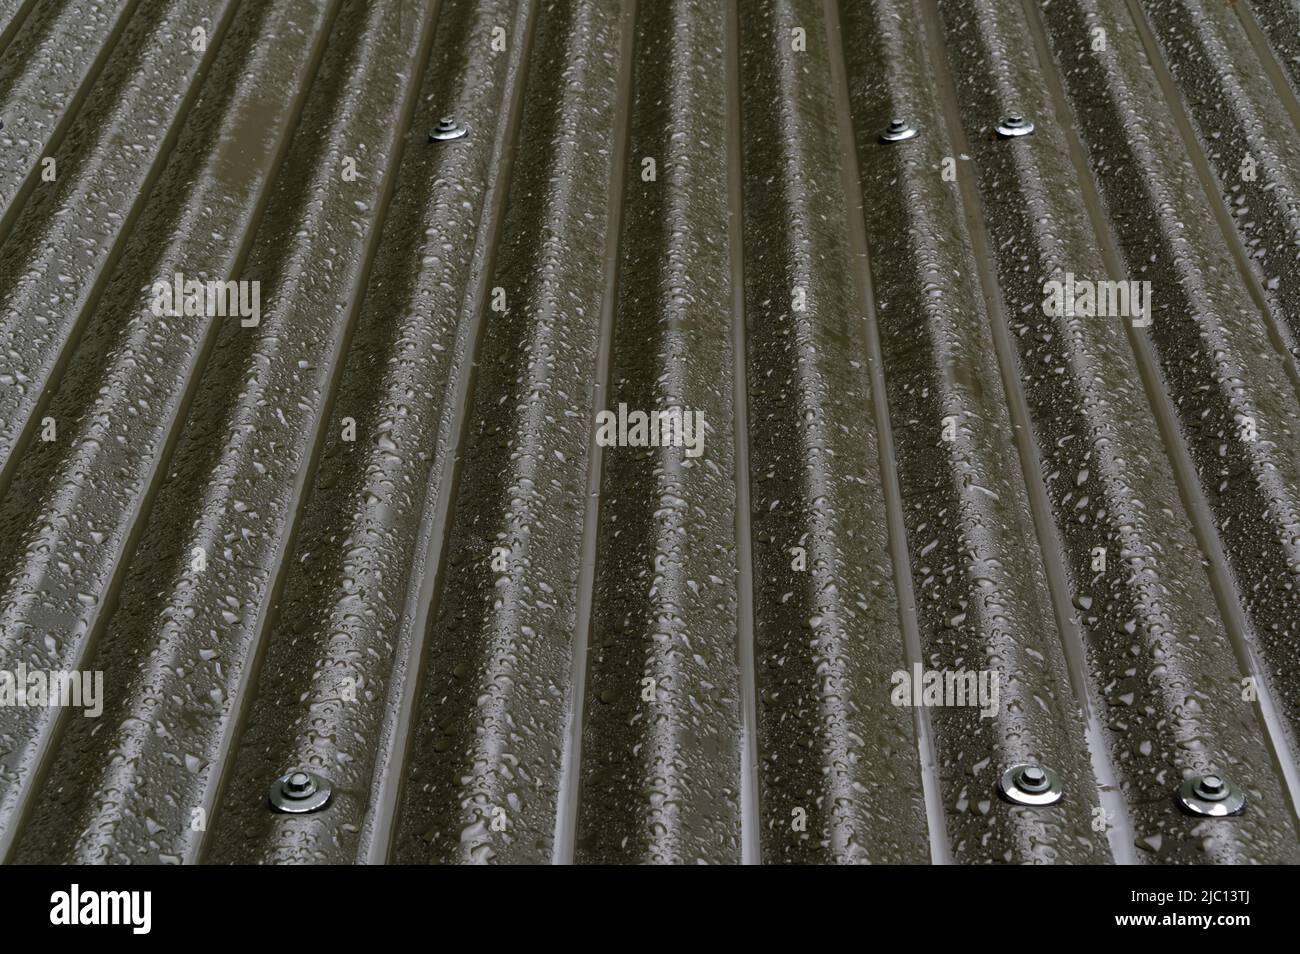 La pintura está saliendo de algunas de las uñas en un techo de hierro corrugado que está siendo lloviendo. Foto de stock